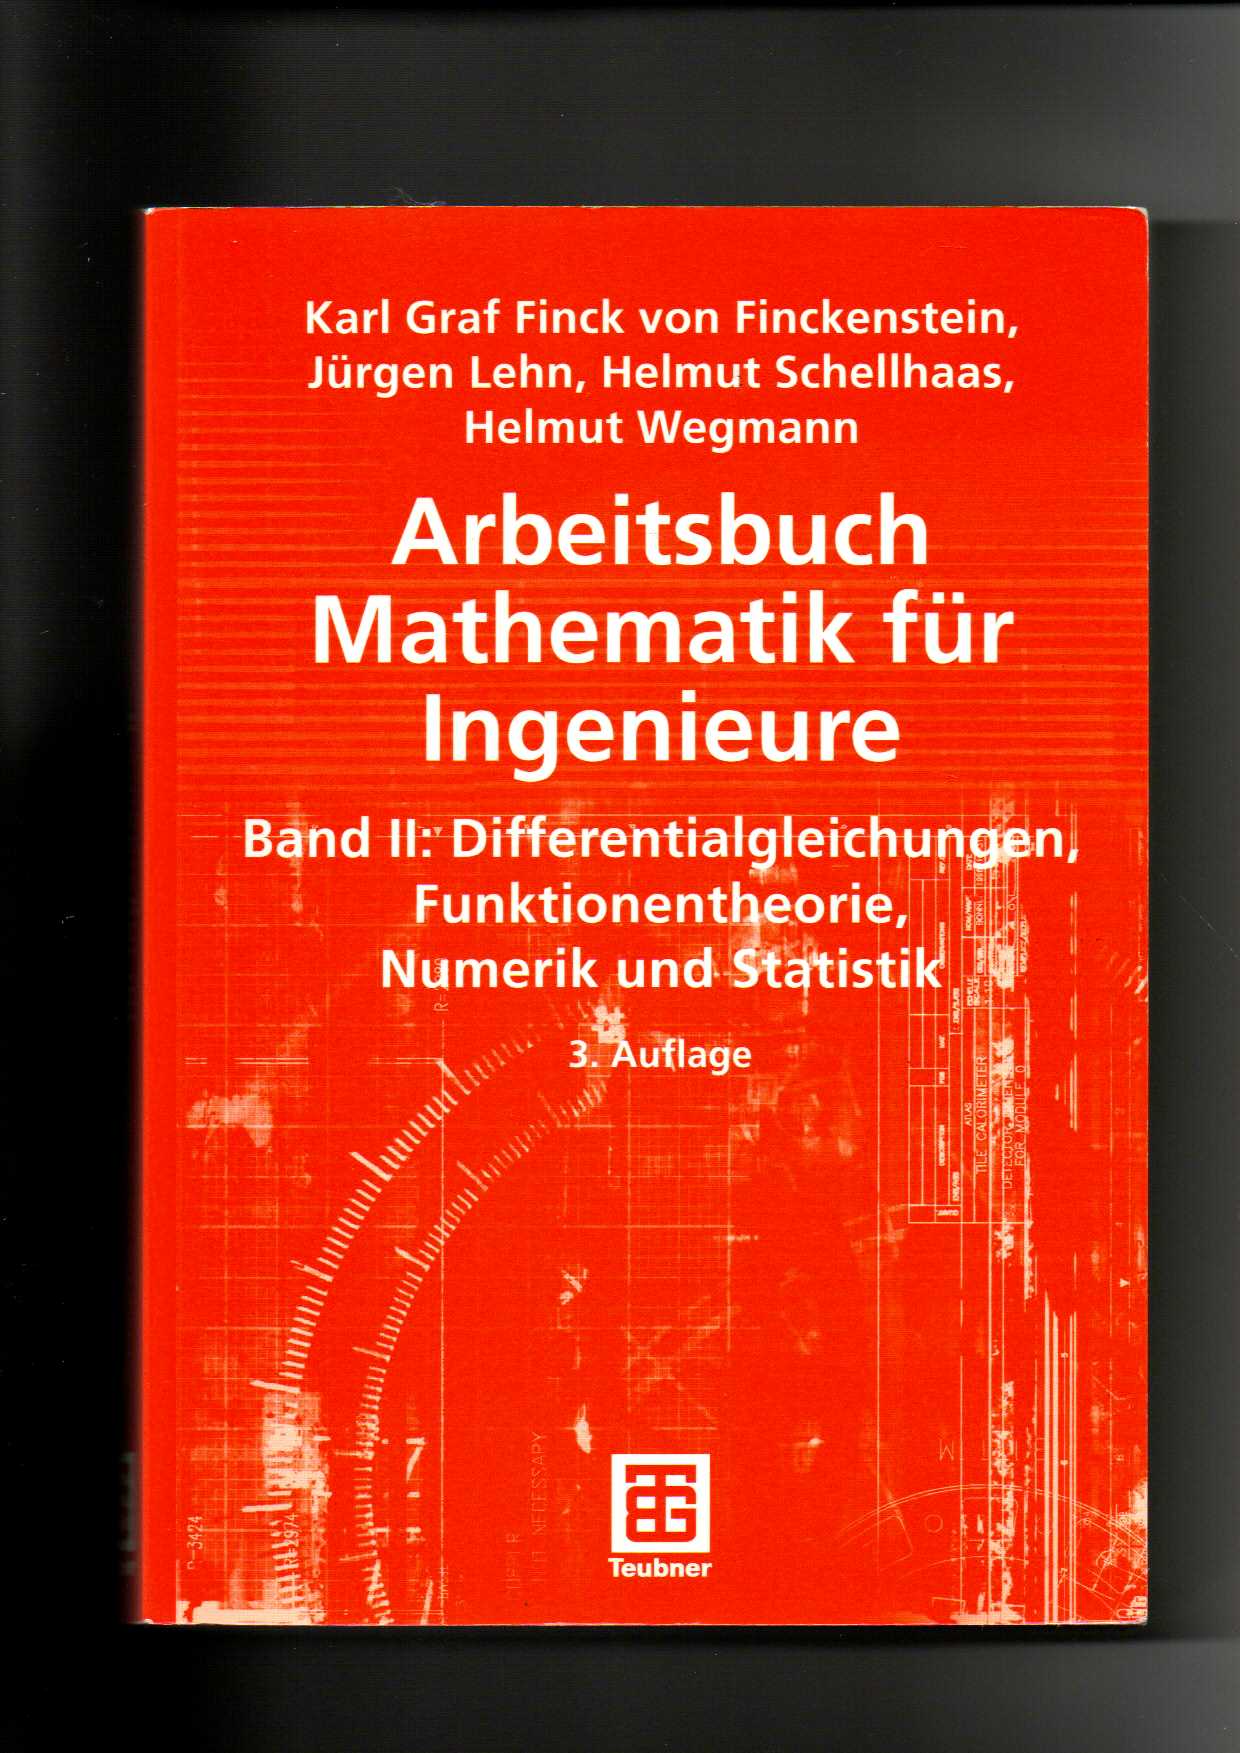 Finckenstein, Arbeitsbuch Mathematik für Ingenieure II 2 - Differentialgleichungen, Funktionentheorie, Numerik und Statistik / 3. Auflage - Finck von Finckenstein, Karl